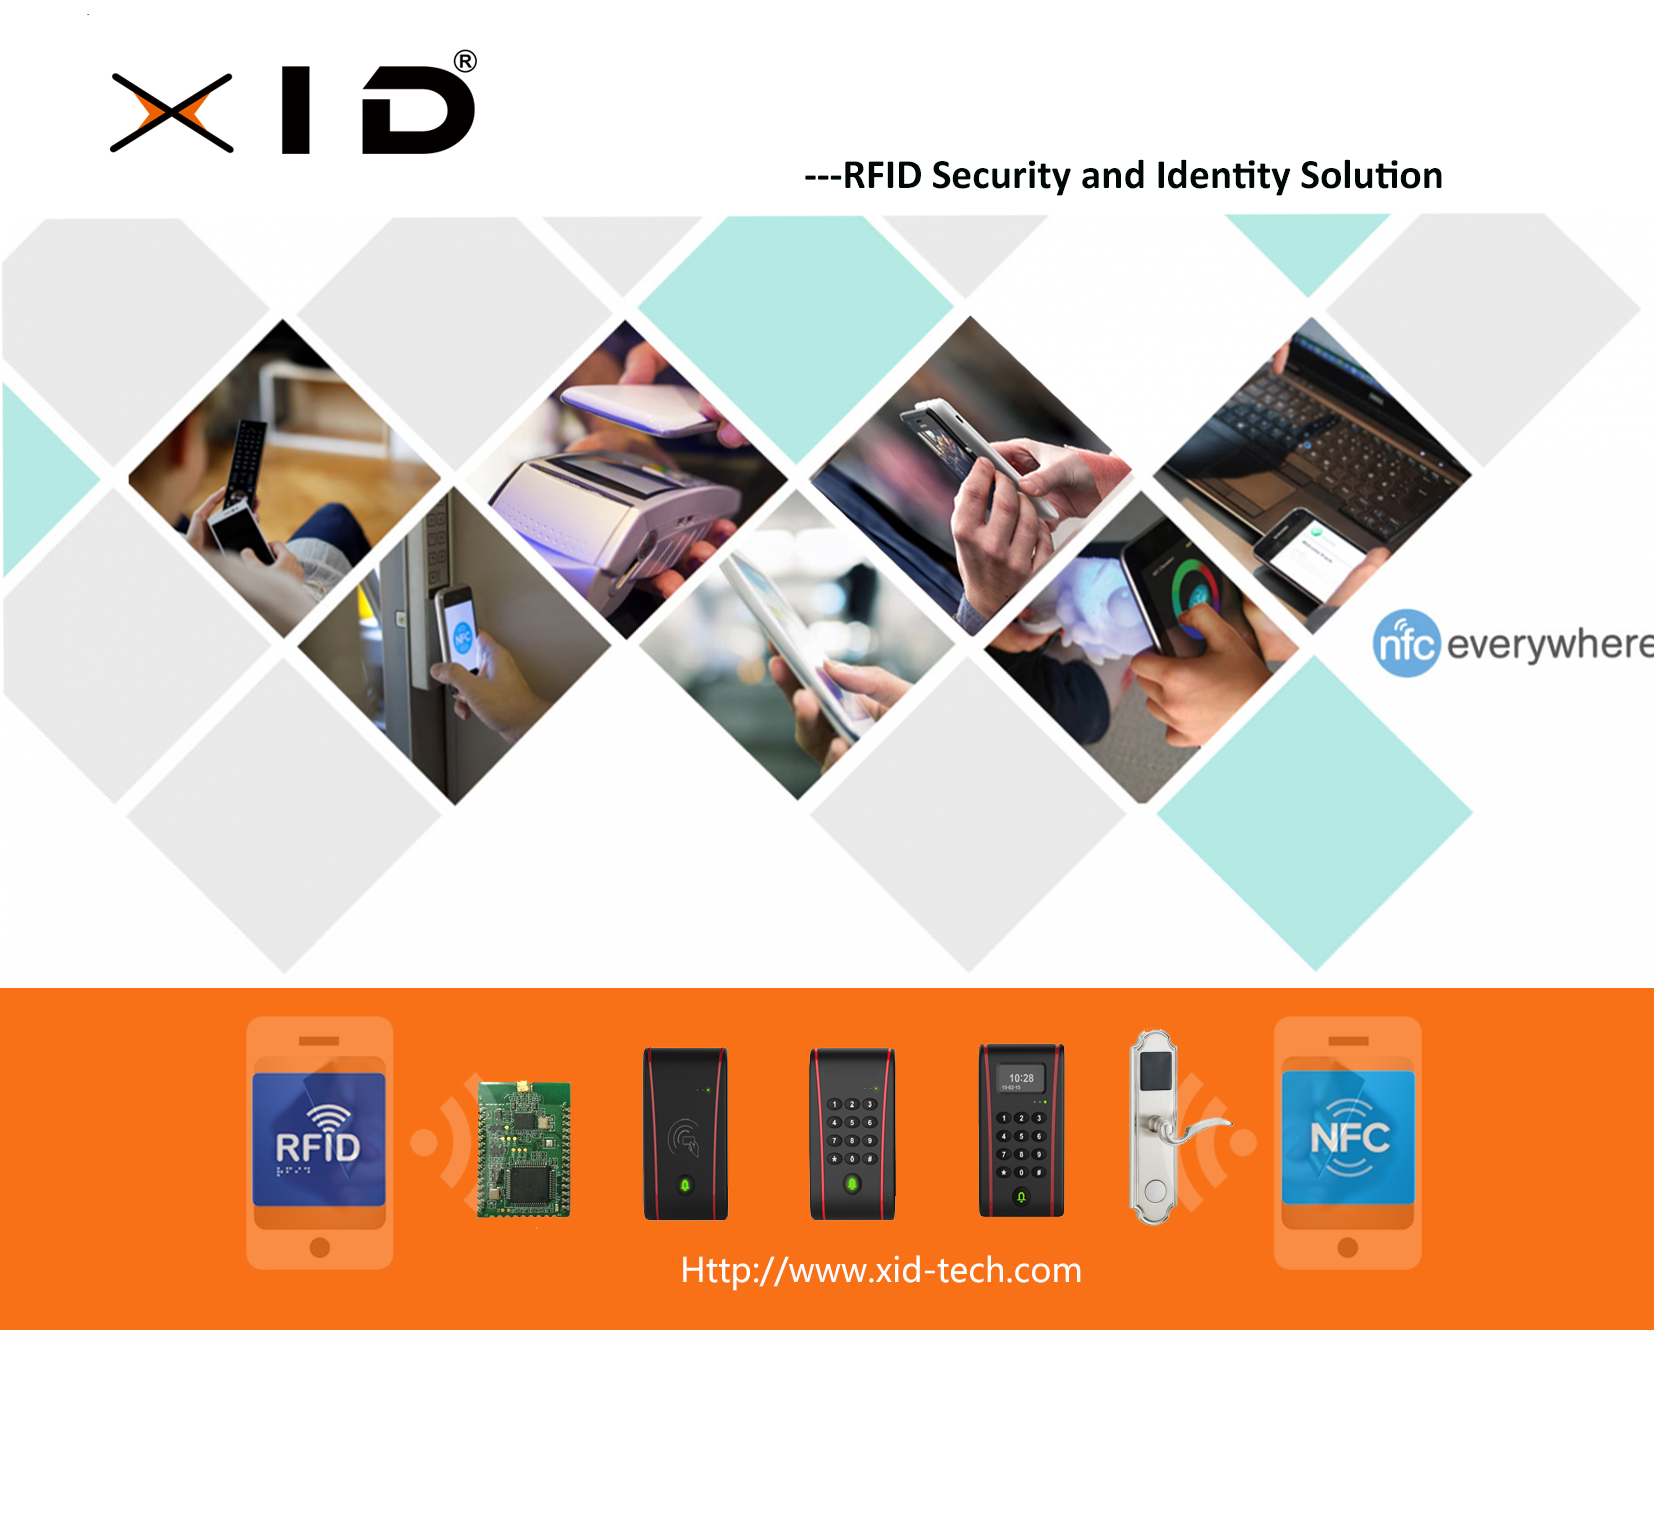 XID-TECH NFC .png